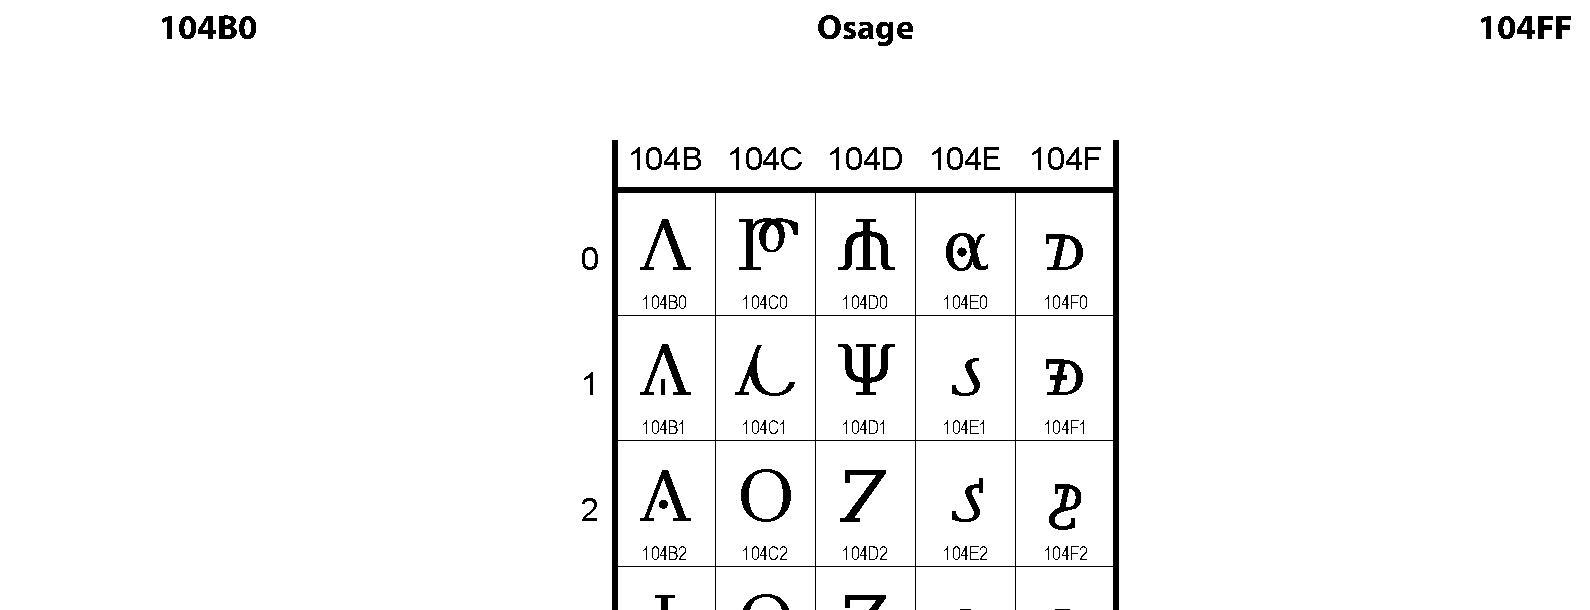 Unicode - Osage